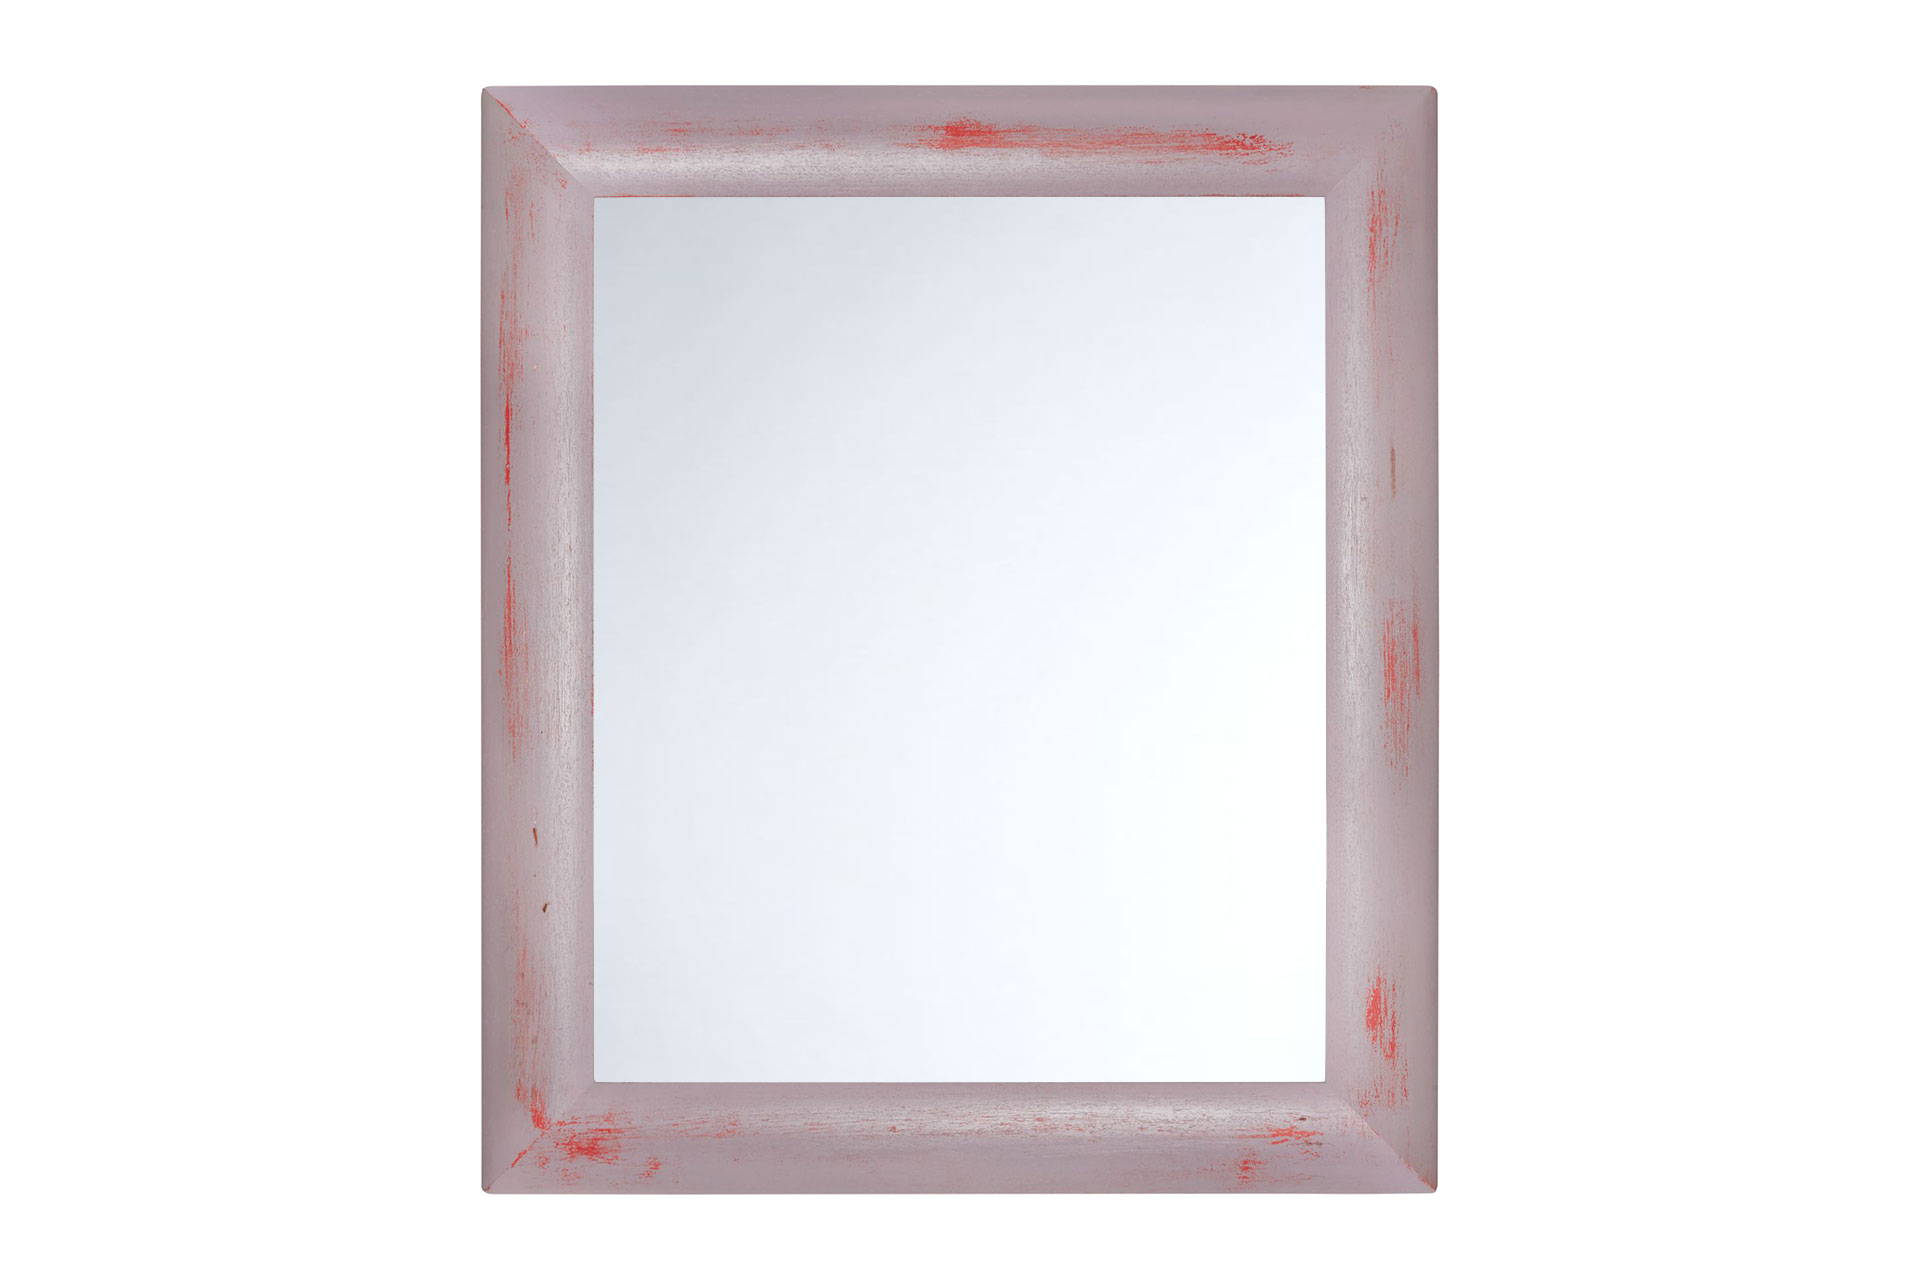 ASR-Rahmendesign Wandspiegel Modell Konstanz, Farbe: feuerrot, pastellviolett, Größe außen: 54cm x 74cm, Spiegelgröße: 40cm x 60cm, Facettenspiegel, rechteckig, Holz, Innenbereich, Shabby-Chic